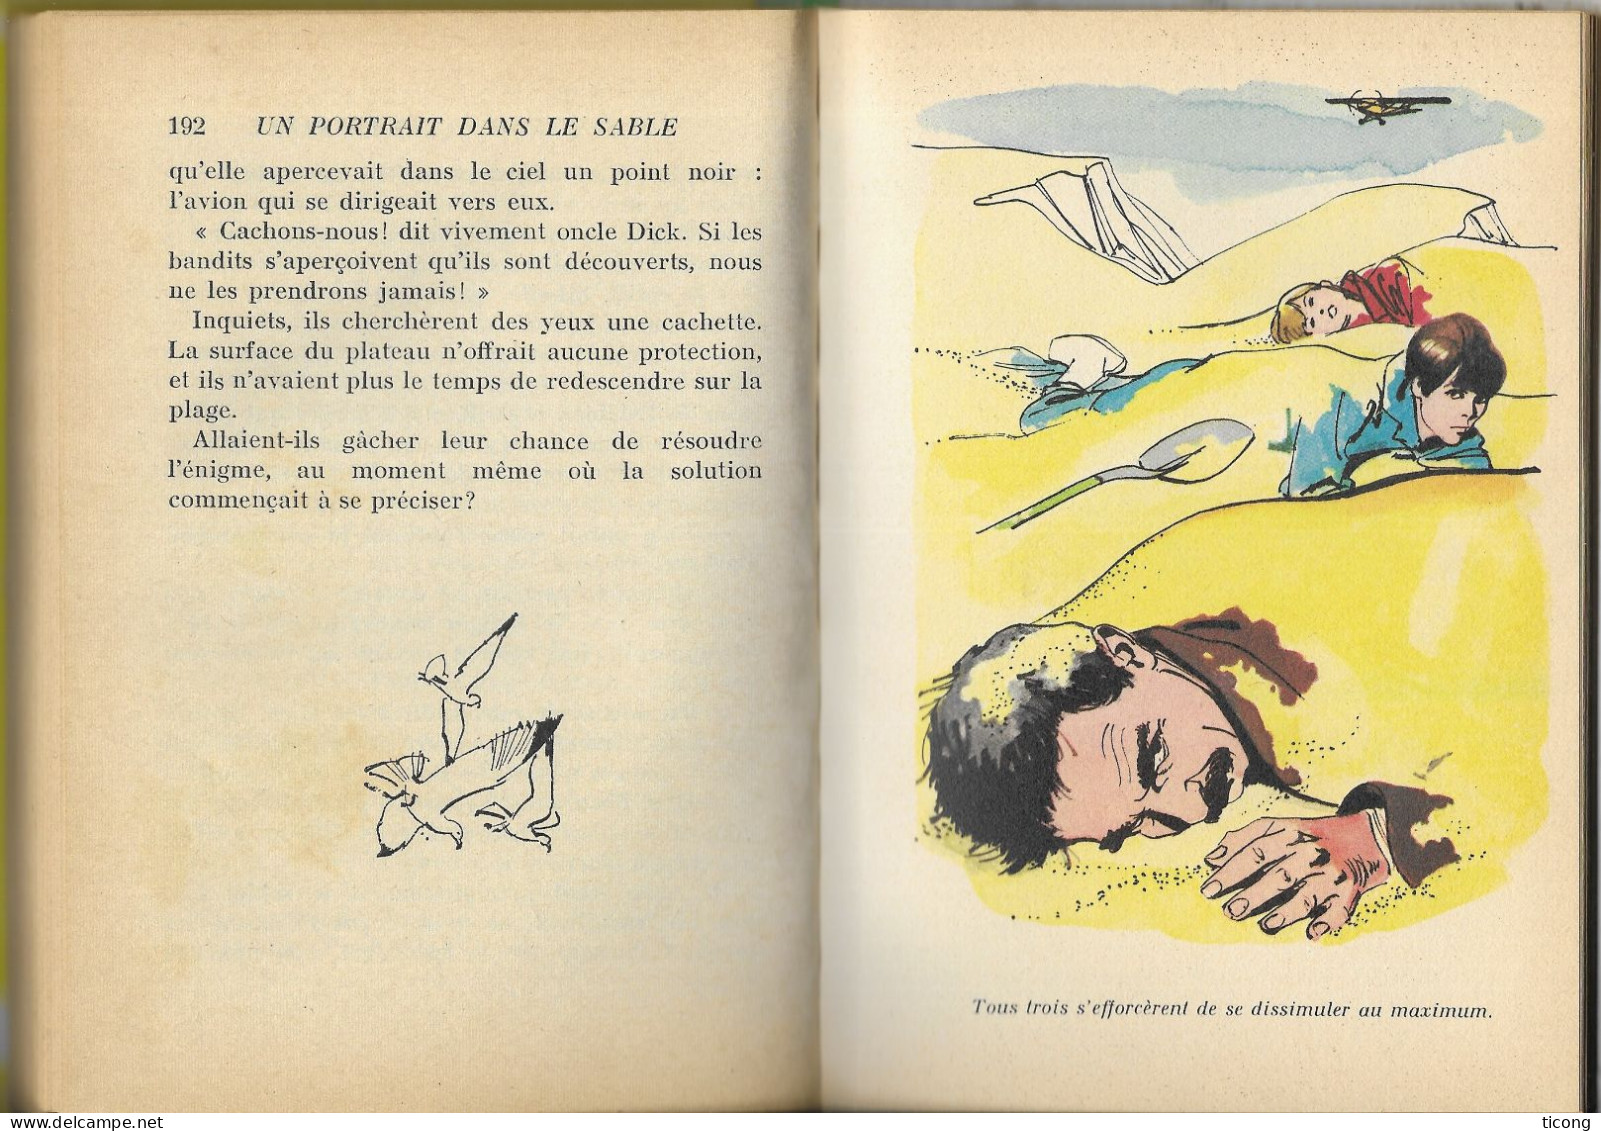 UNE ENQUETE DES SOEURS PARKER DE CAROLINE QUINE - UN PORTRAIT DANS LE SABLE, EDITION ORIGINALE FRANCAISE 1969, A VOIR - Bibliotheque Verte